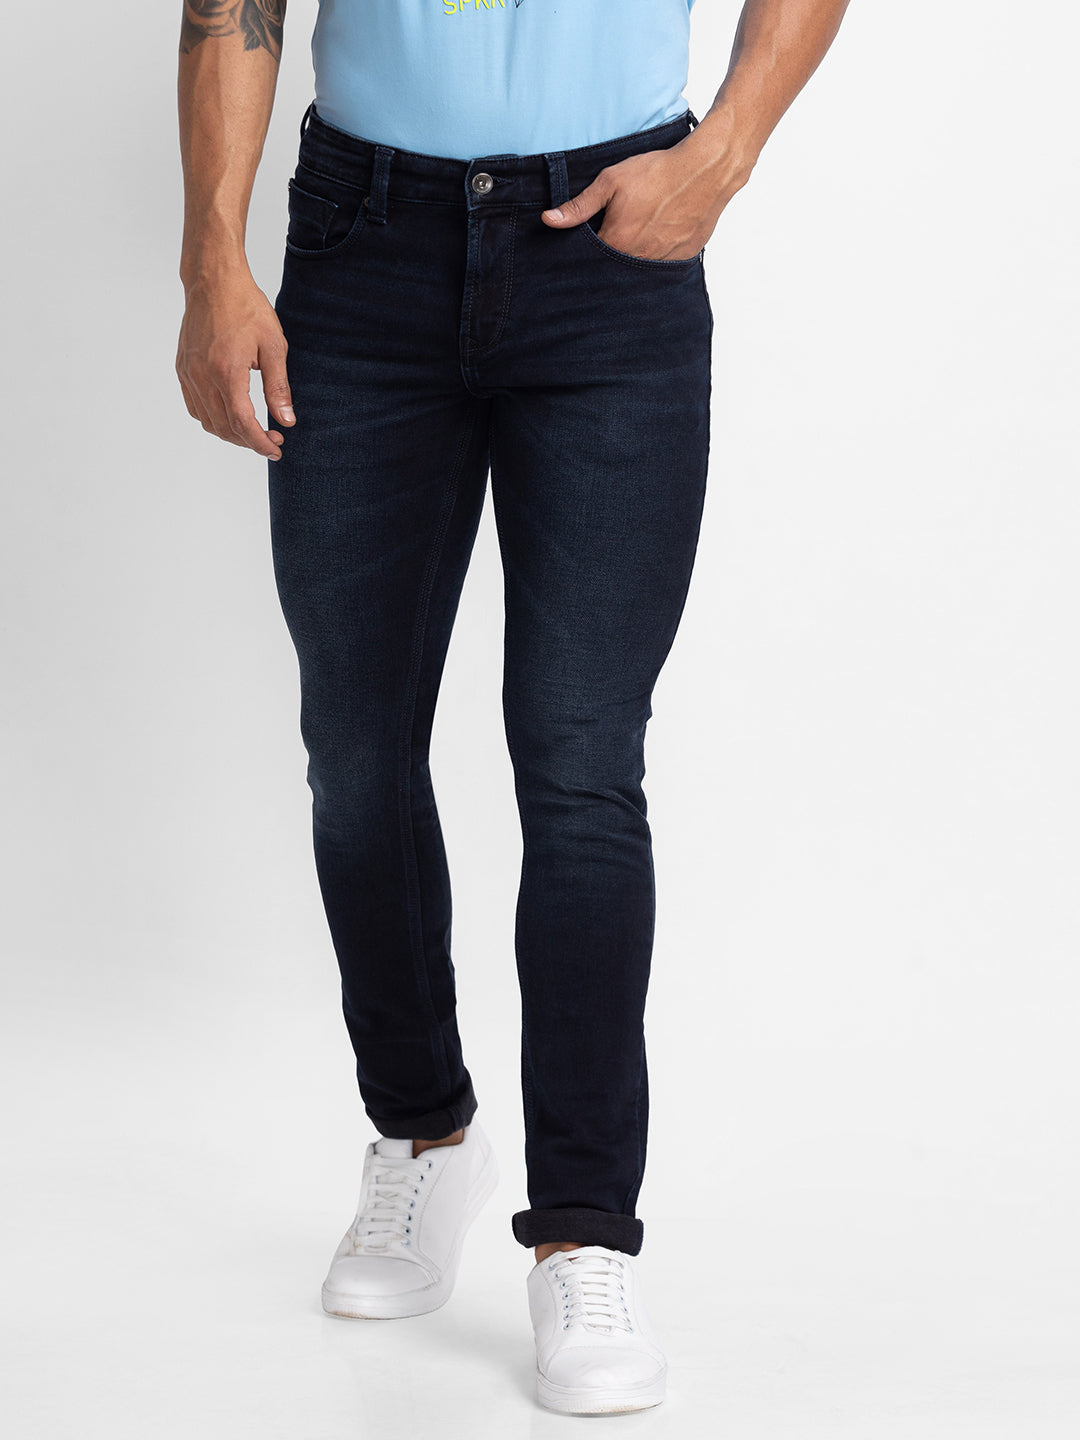 Spykar Blue Indigo Cotton Slim Fit Narrow Length Jeans For Men (Skinny)